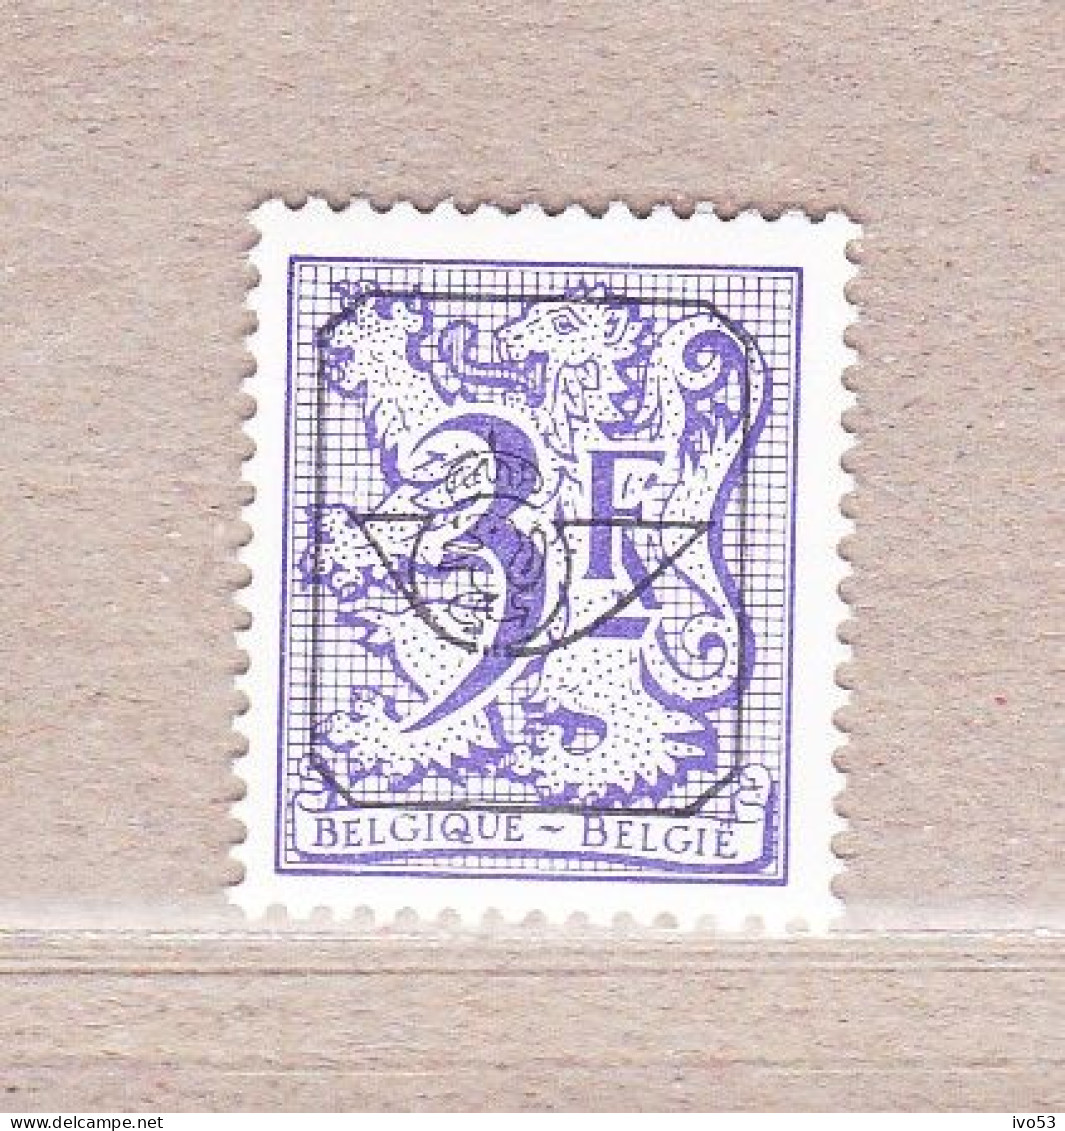 1977nr PRE804** Postfris,Heraldieke Leeuw 3fr. - Typo Precancels 1967-85 (New Numerals)